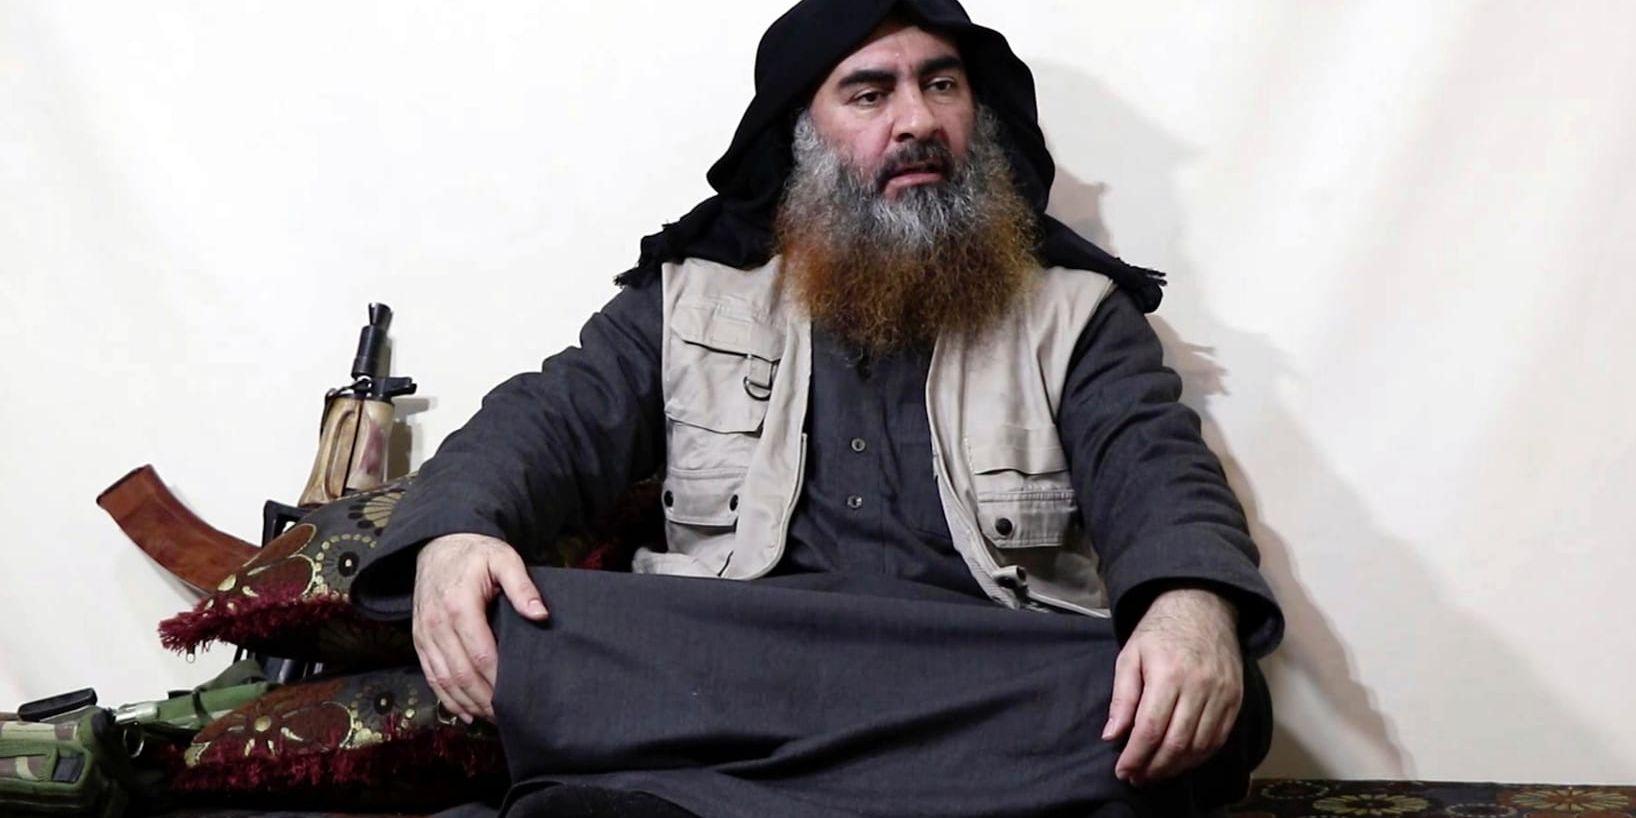 En stillbild från videon som släpptes på måndagen sägs visa IS-ledaren Abu Bakr al-Baghdadi.